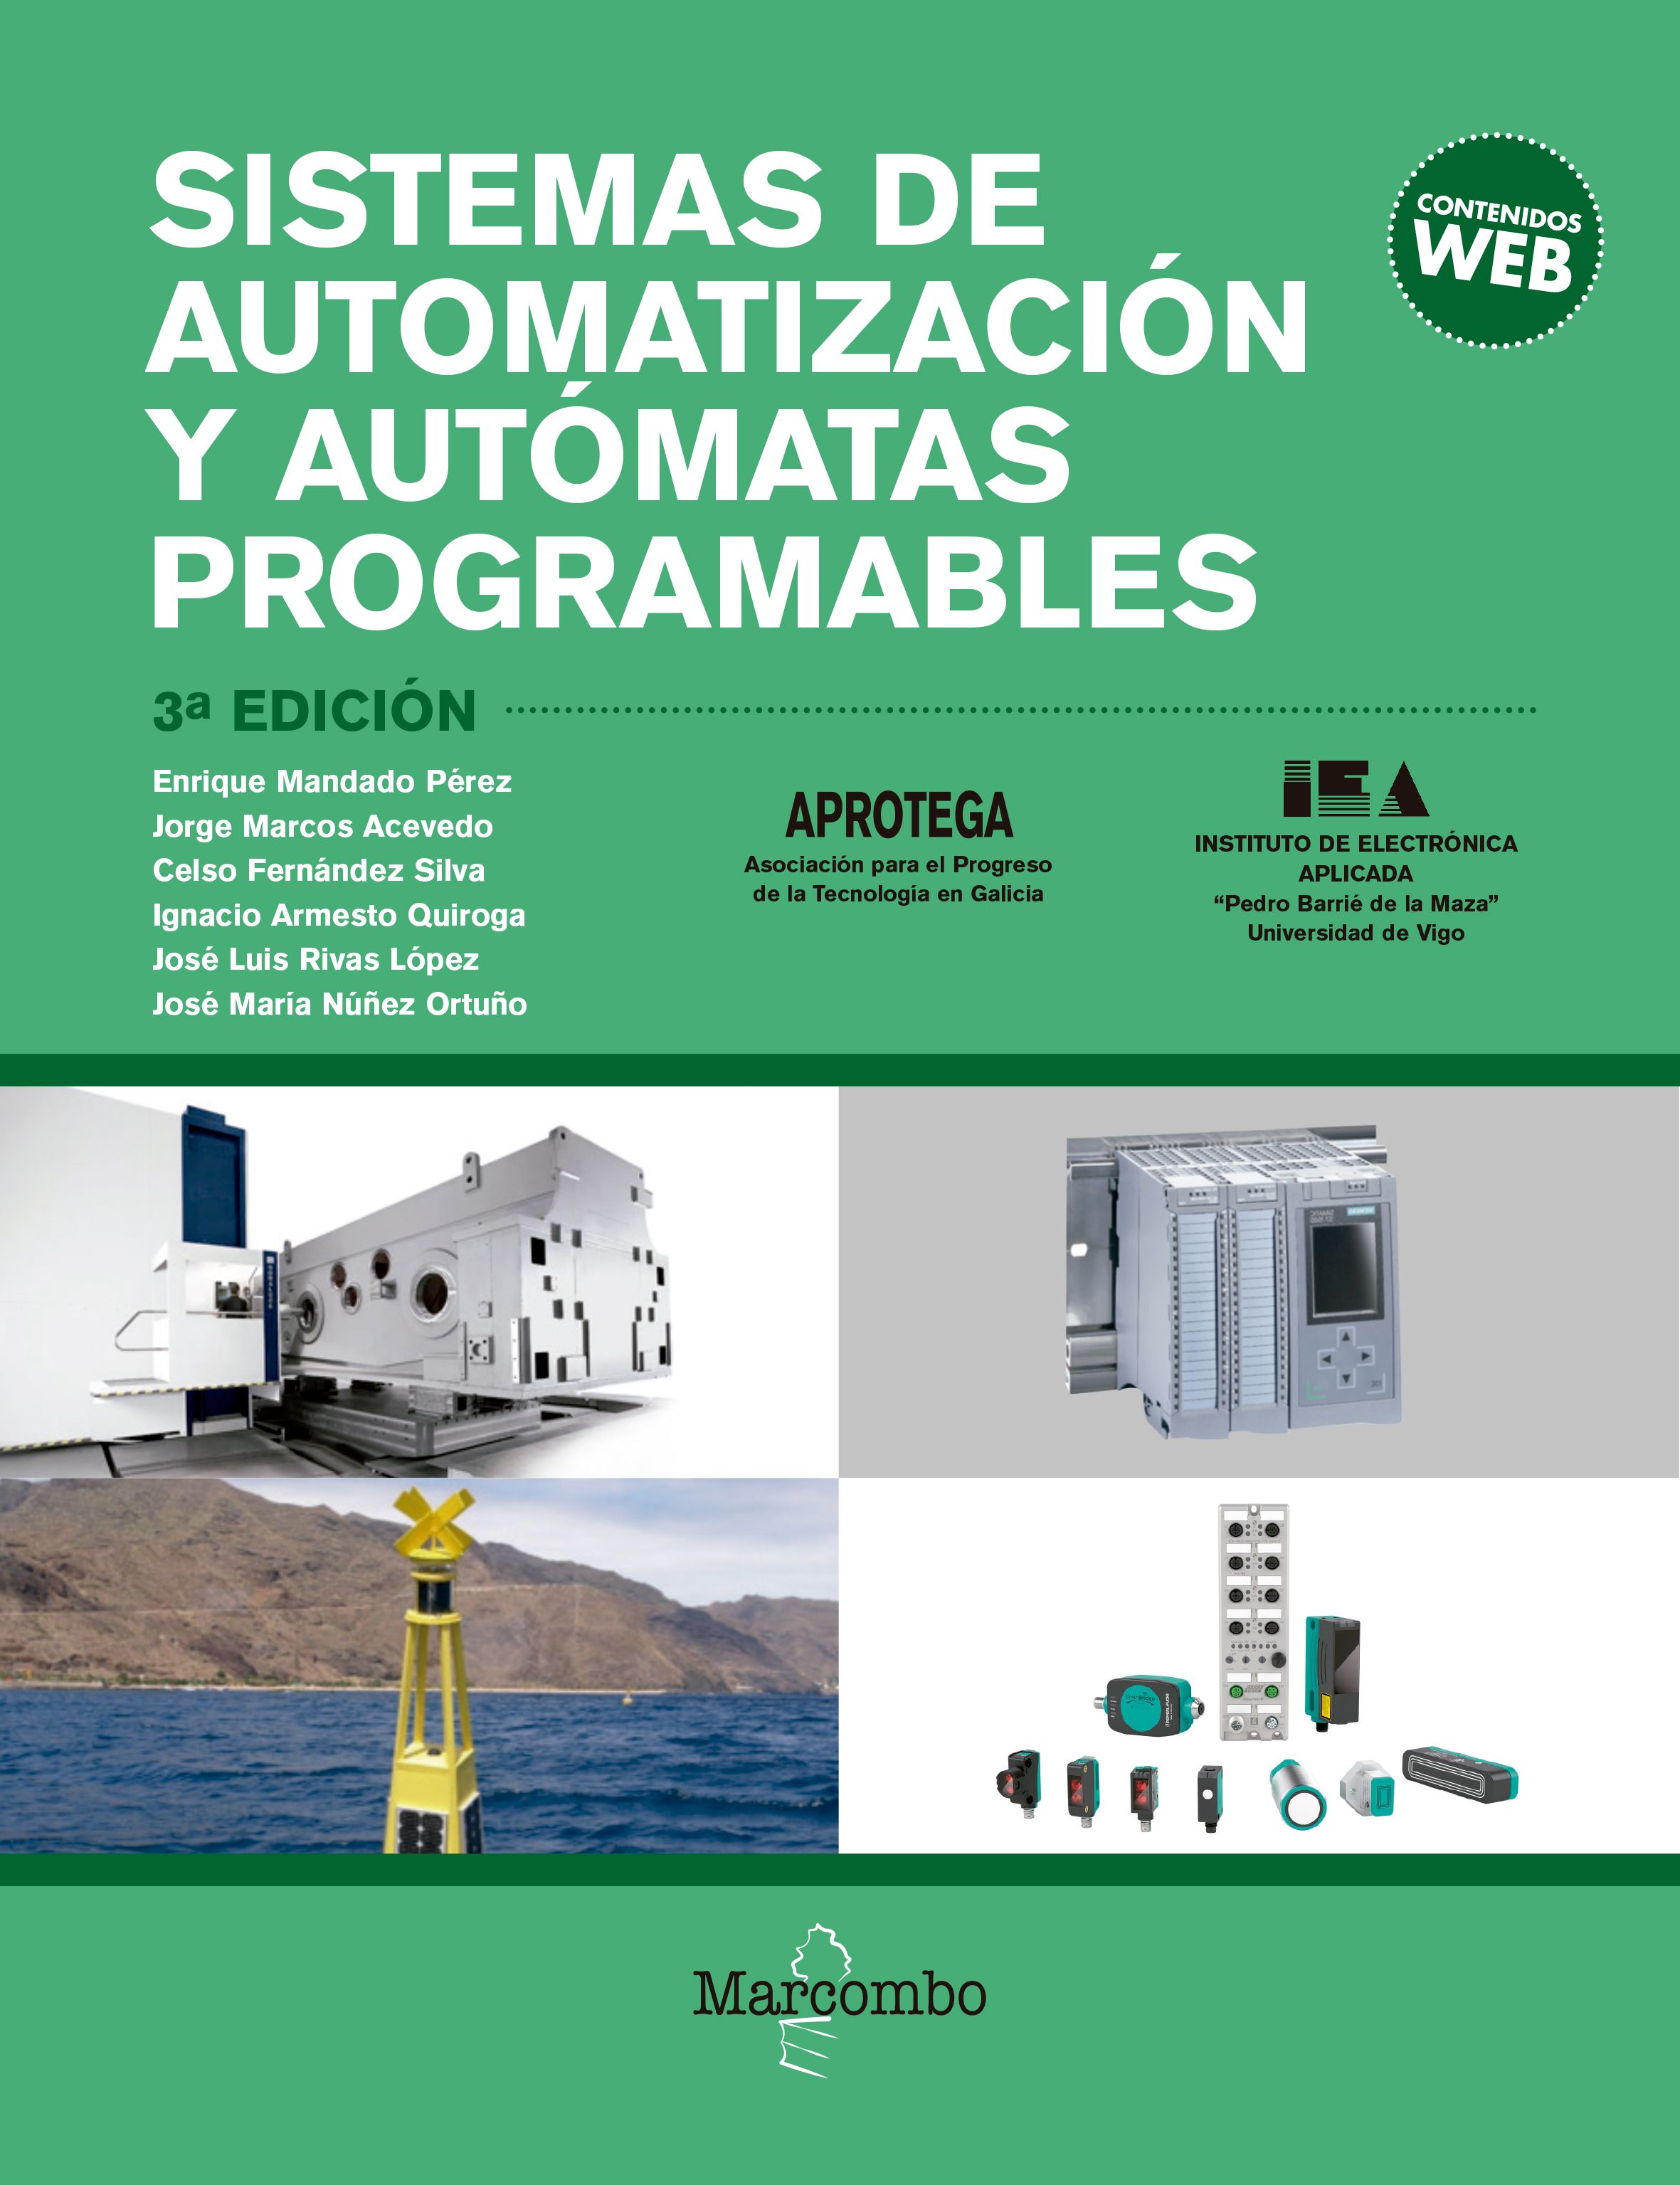 Imagen de portada del libro Sistemas de automatización y autómatas programables